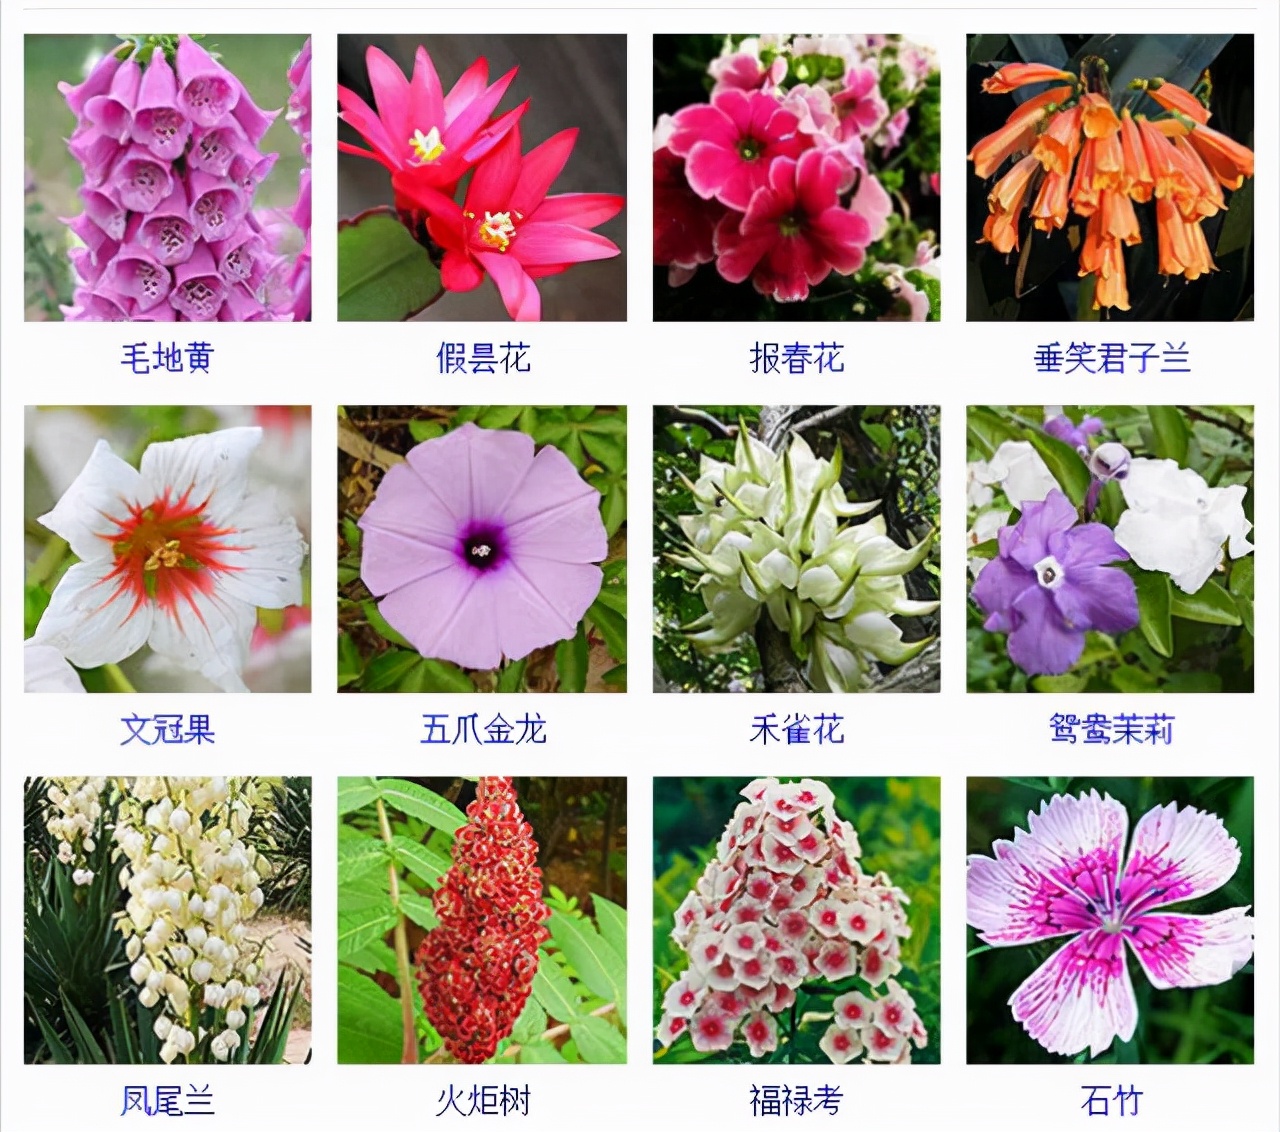 各种花卉名称图片